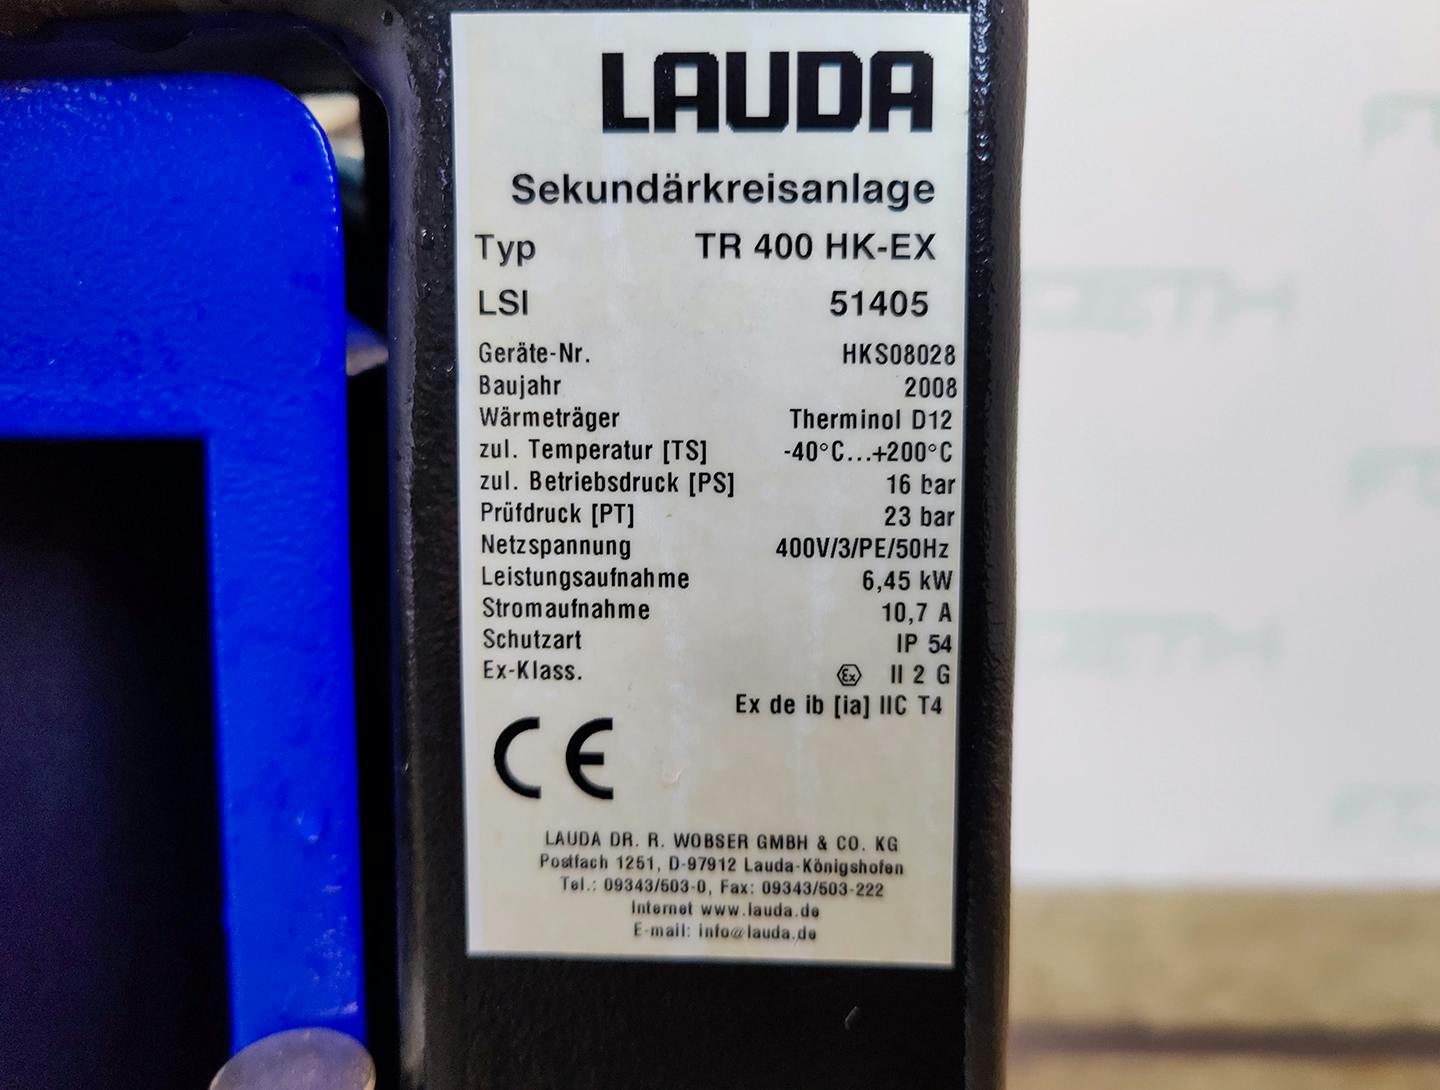 Lauda TR400 HK-EX "secondary circuit system" - Unidade de fluido térmico - image 6